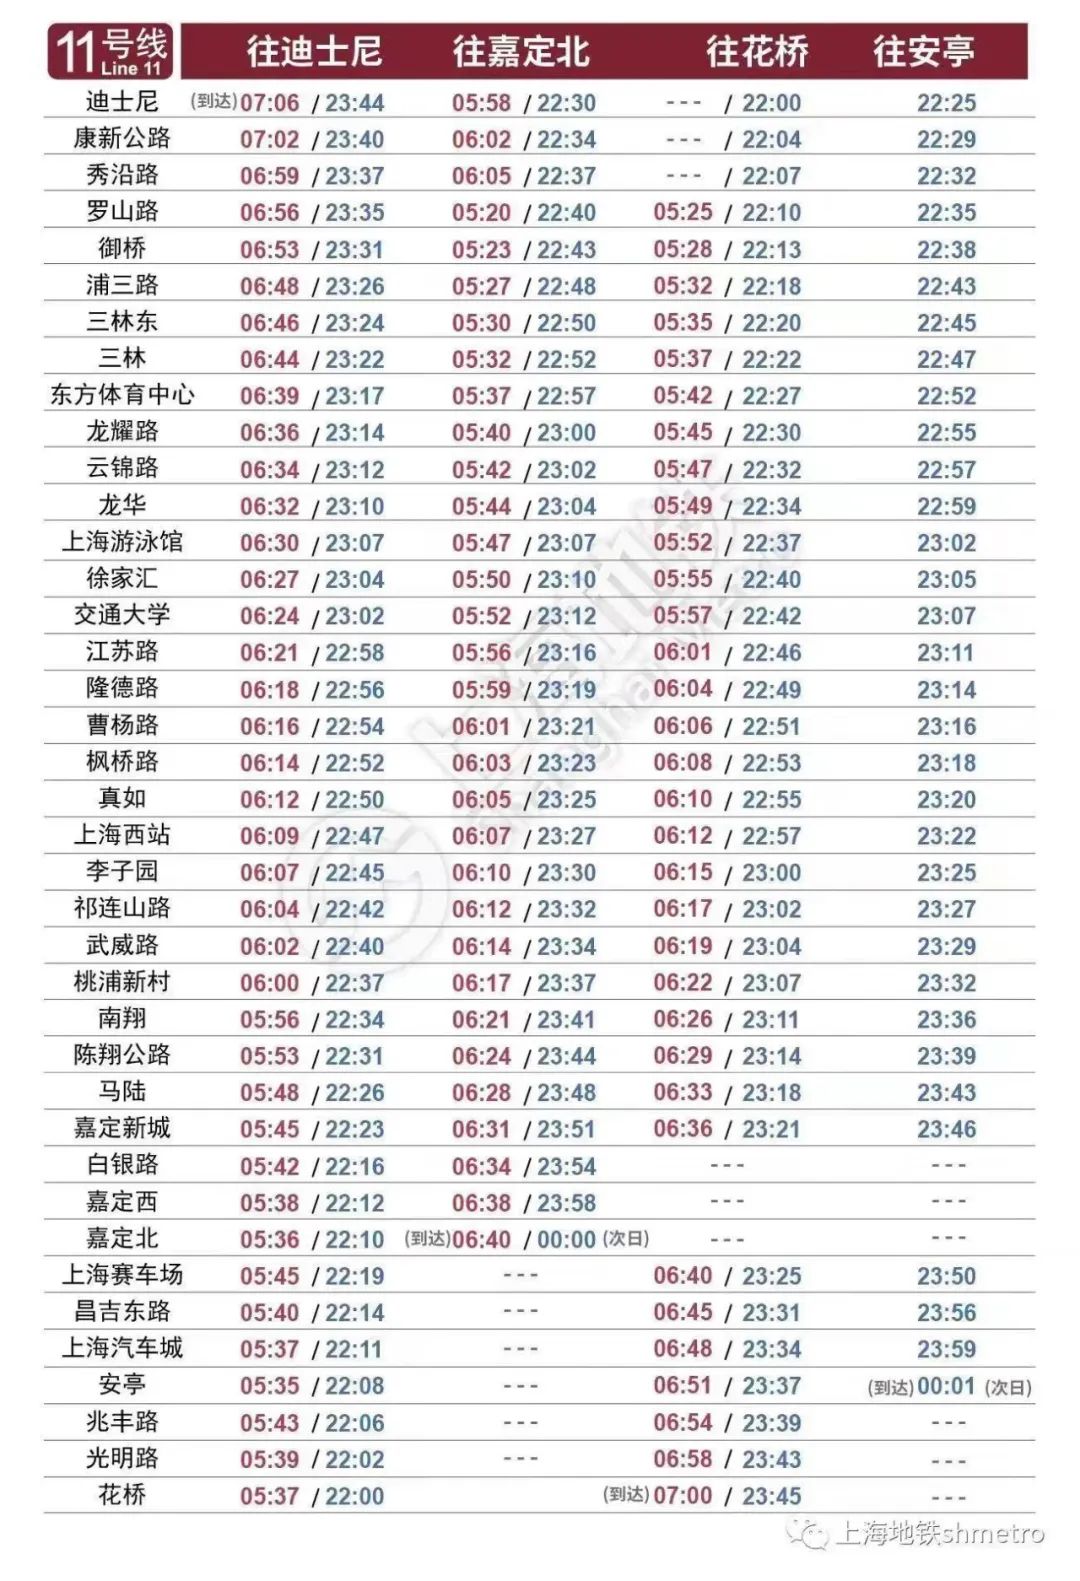 上海地铁11号线首末班车时刻表